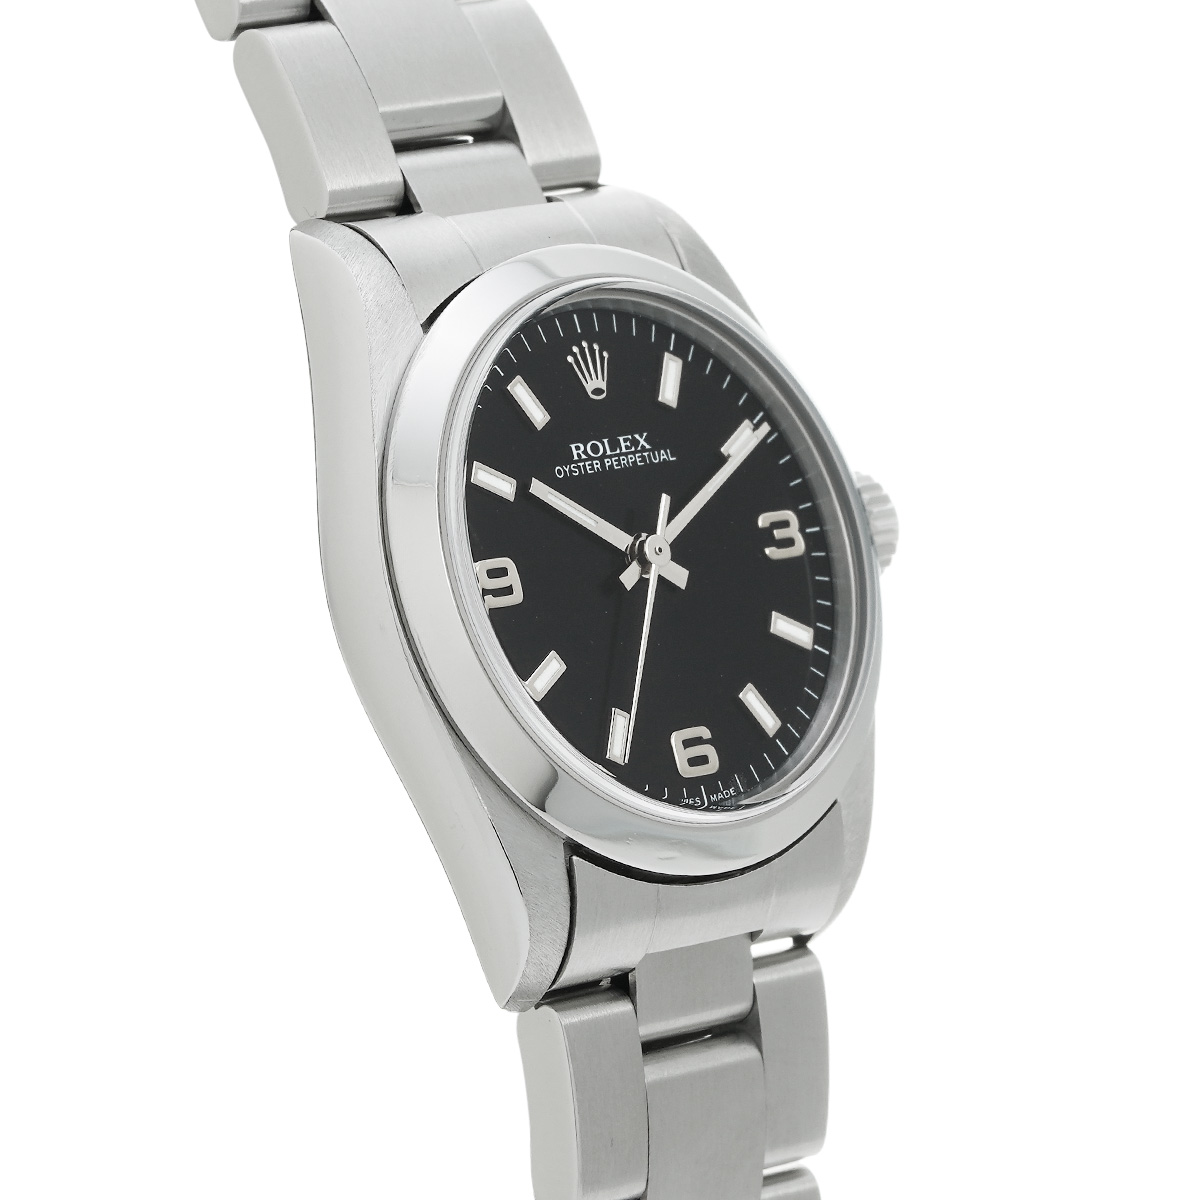 ロレックス ROLEX 77080 A番(1999年頃製造) ブラック ユニセックス 腕時計